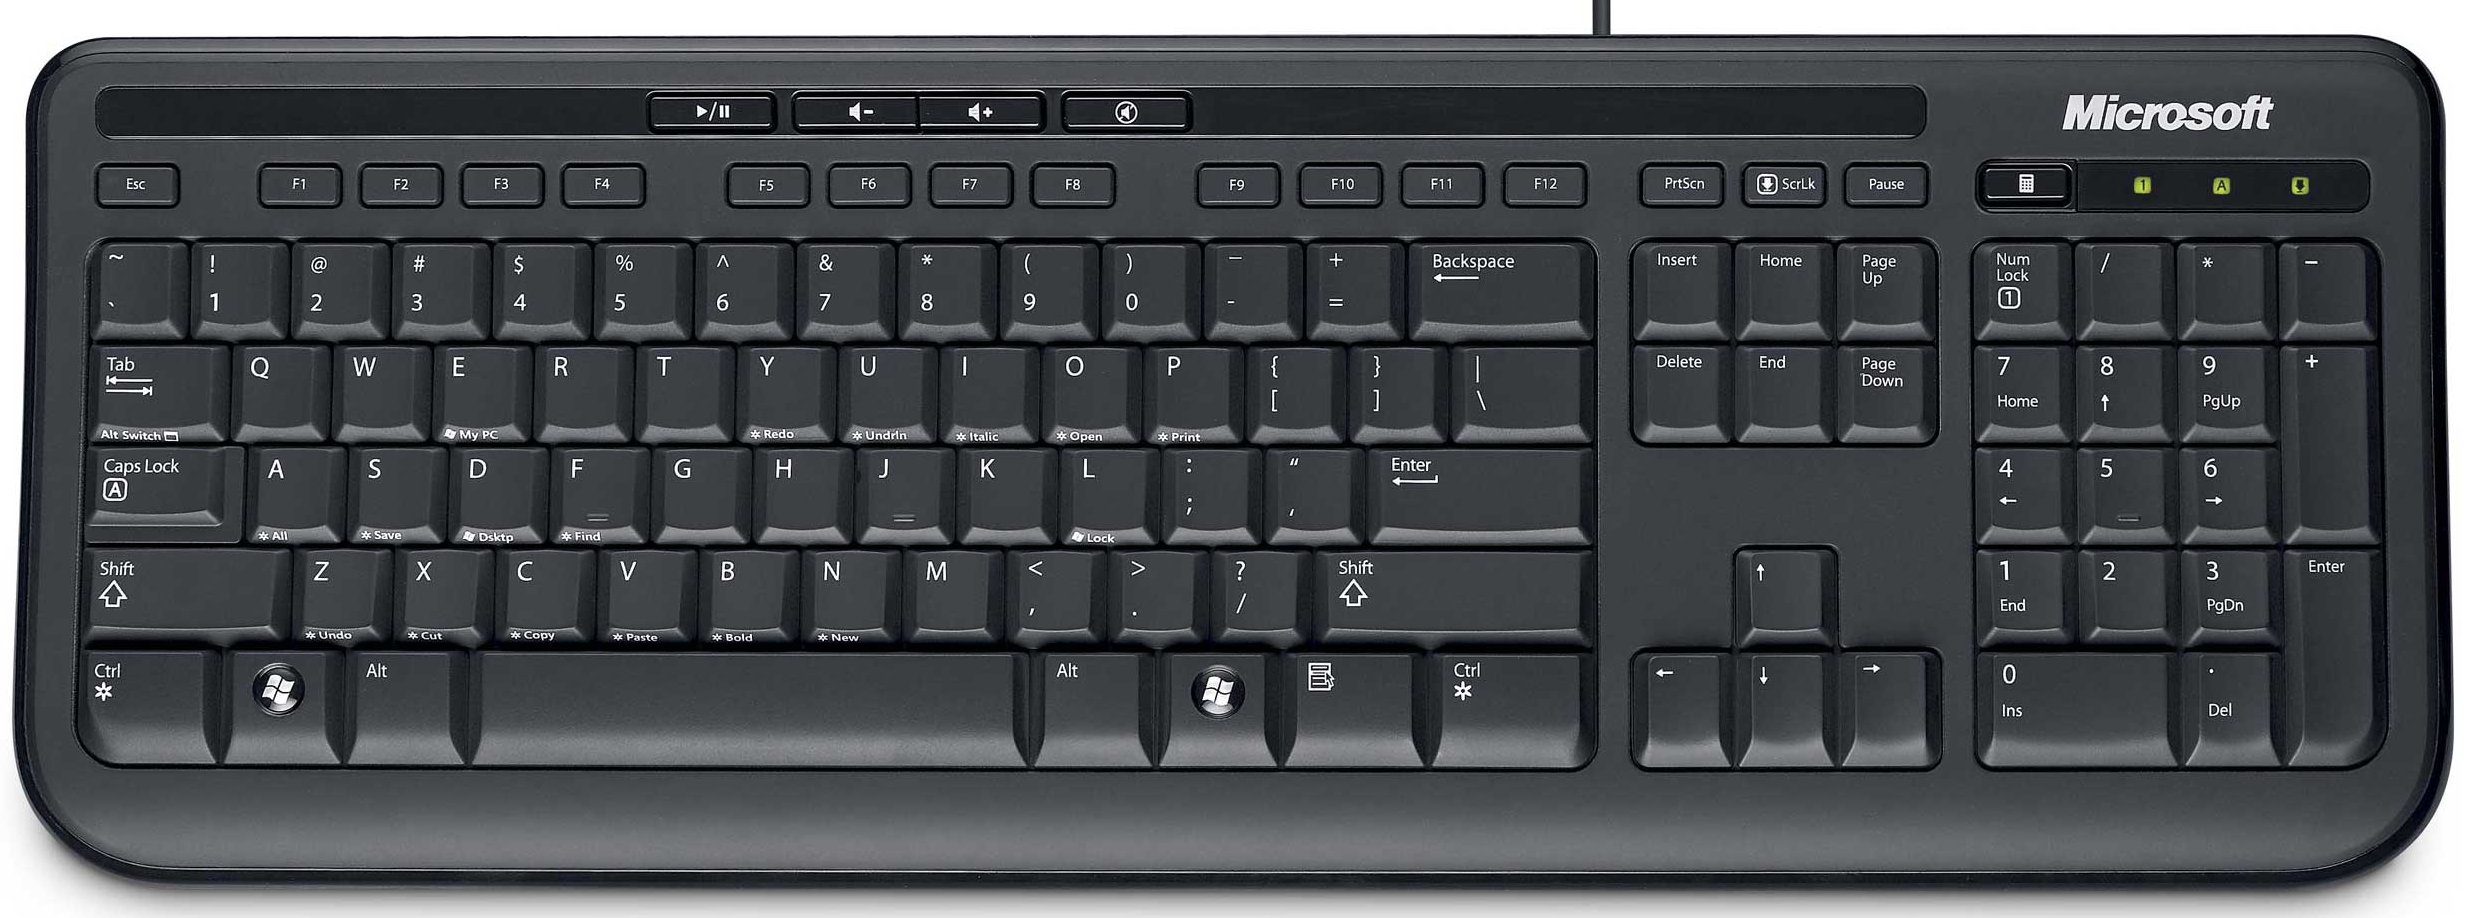 Microsoft wired keyboard 600 42